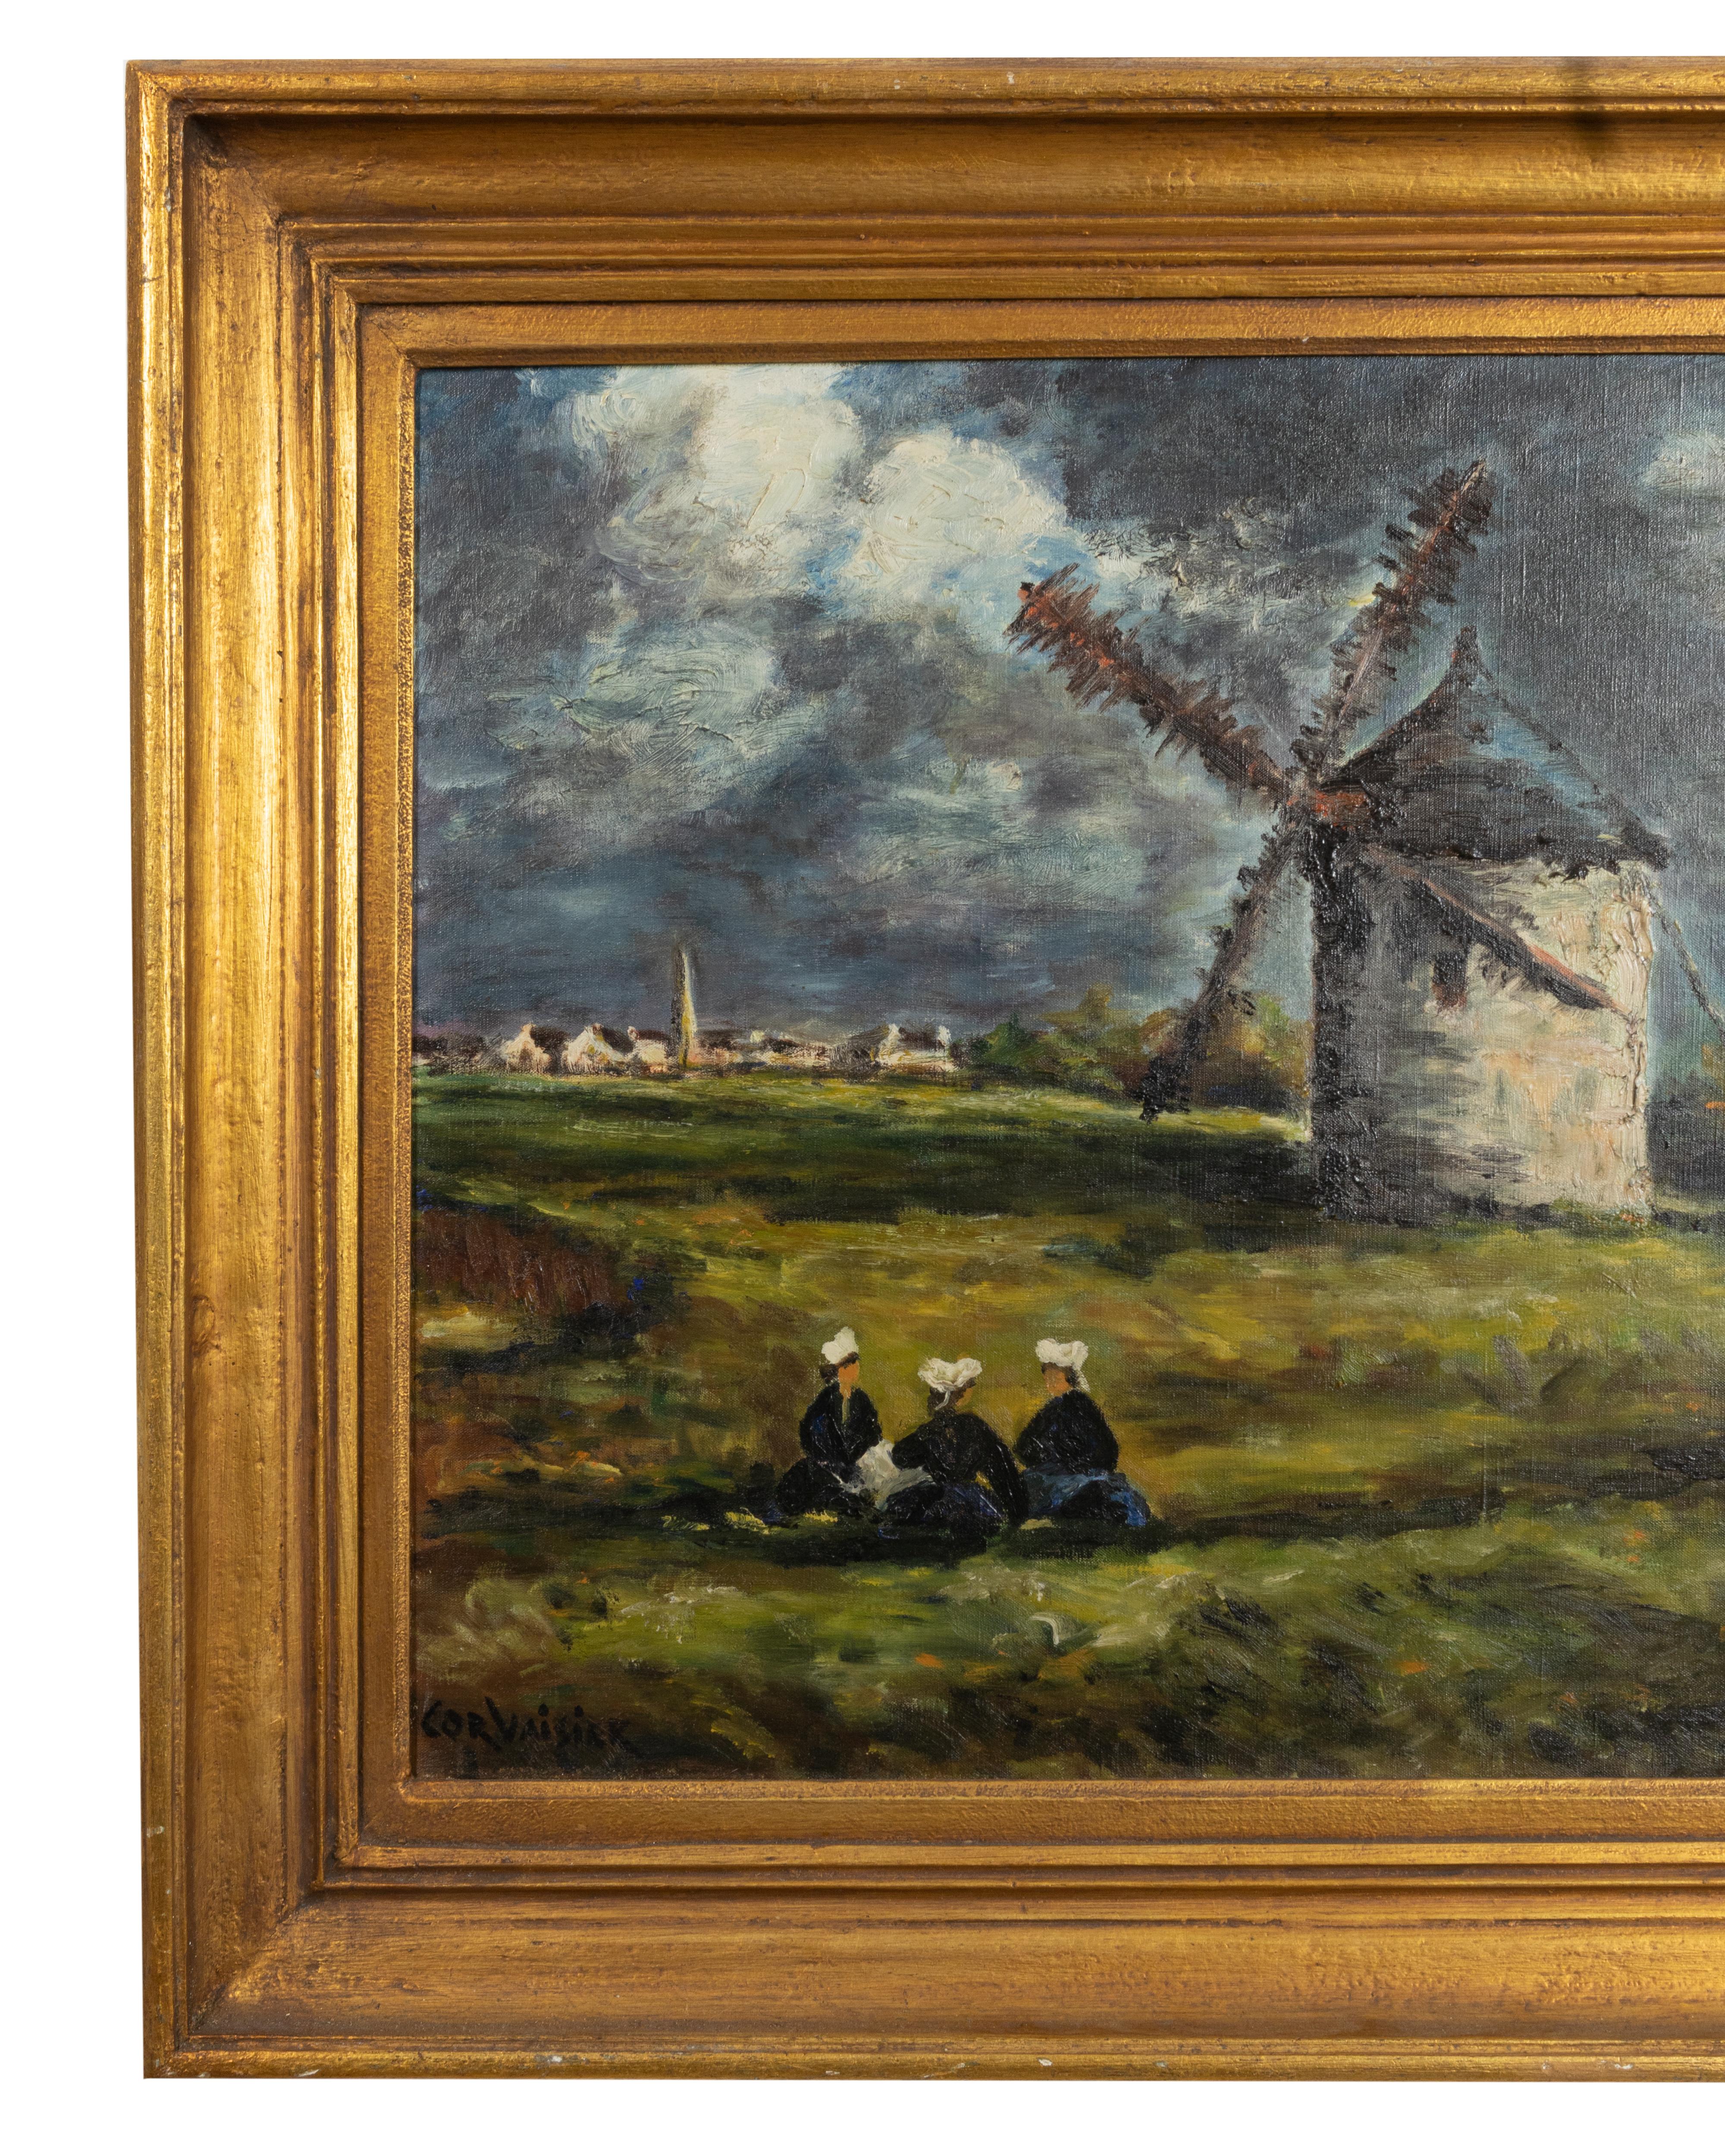 Dieses eindrucksvolle Gemälde im Stil der Schule von Barbizon zeigt eine heitere ländliche Szene, in der drei Frauen unter einer malerischen Windmühle Zuflucht suchen. In der Ferne tragen ein malerisches Dorf und ein Kirchturm zu der charmanten